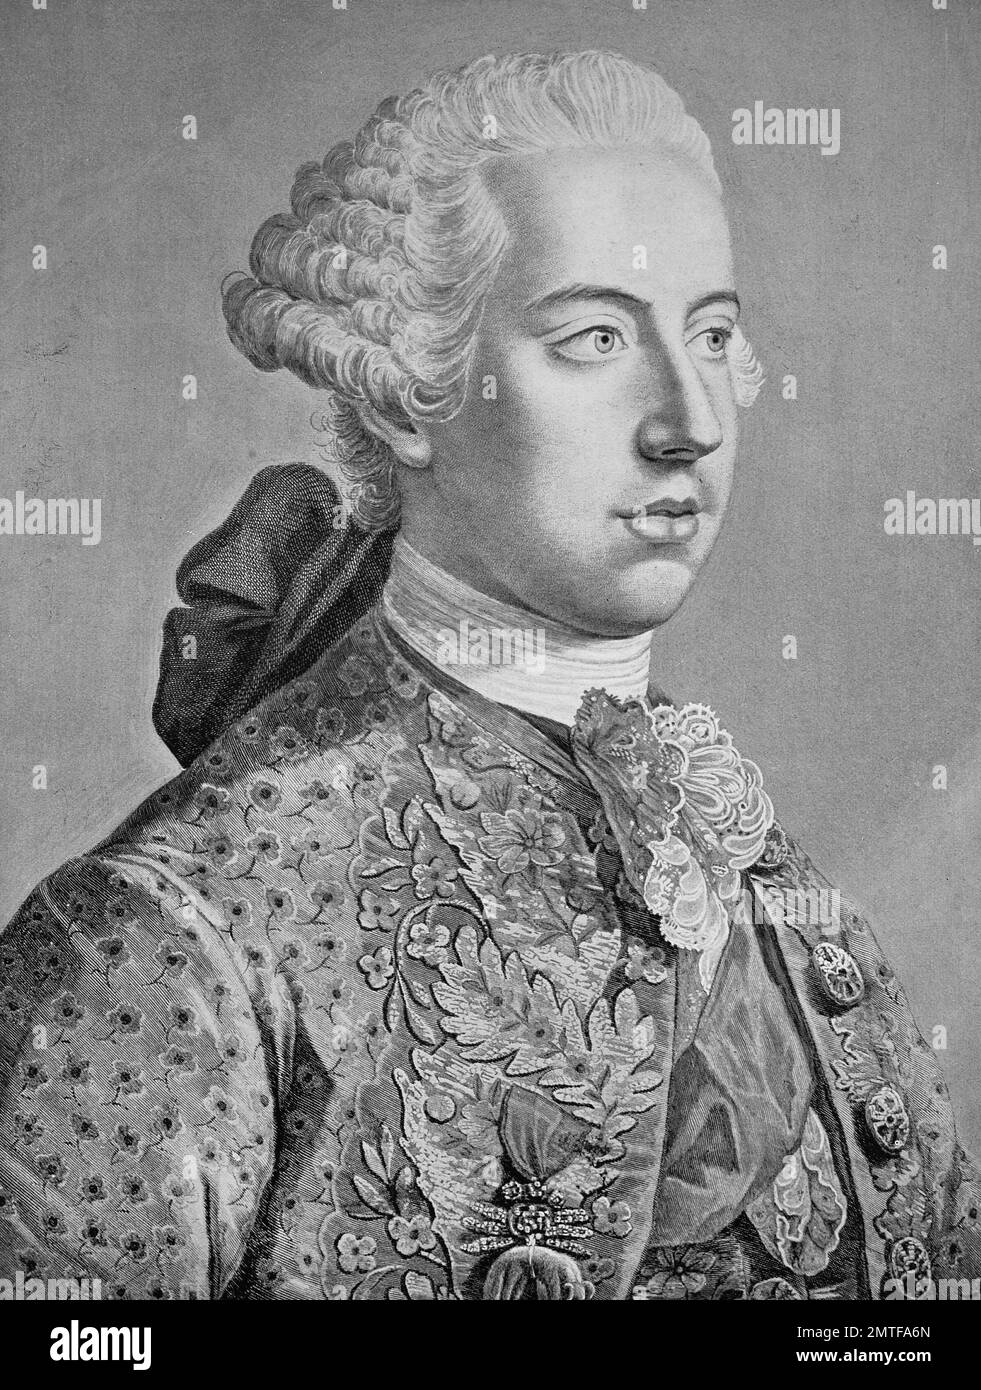 Joseph II., Joseph Benedikt Anton Michael Adam war römisch-deutscher Kaiser von 1765 bis 1790 und Herrscher des Habsburg landet von 1780 bis 1790 Stockfoto